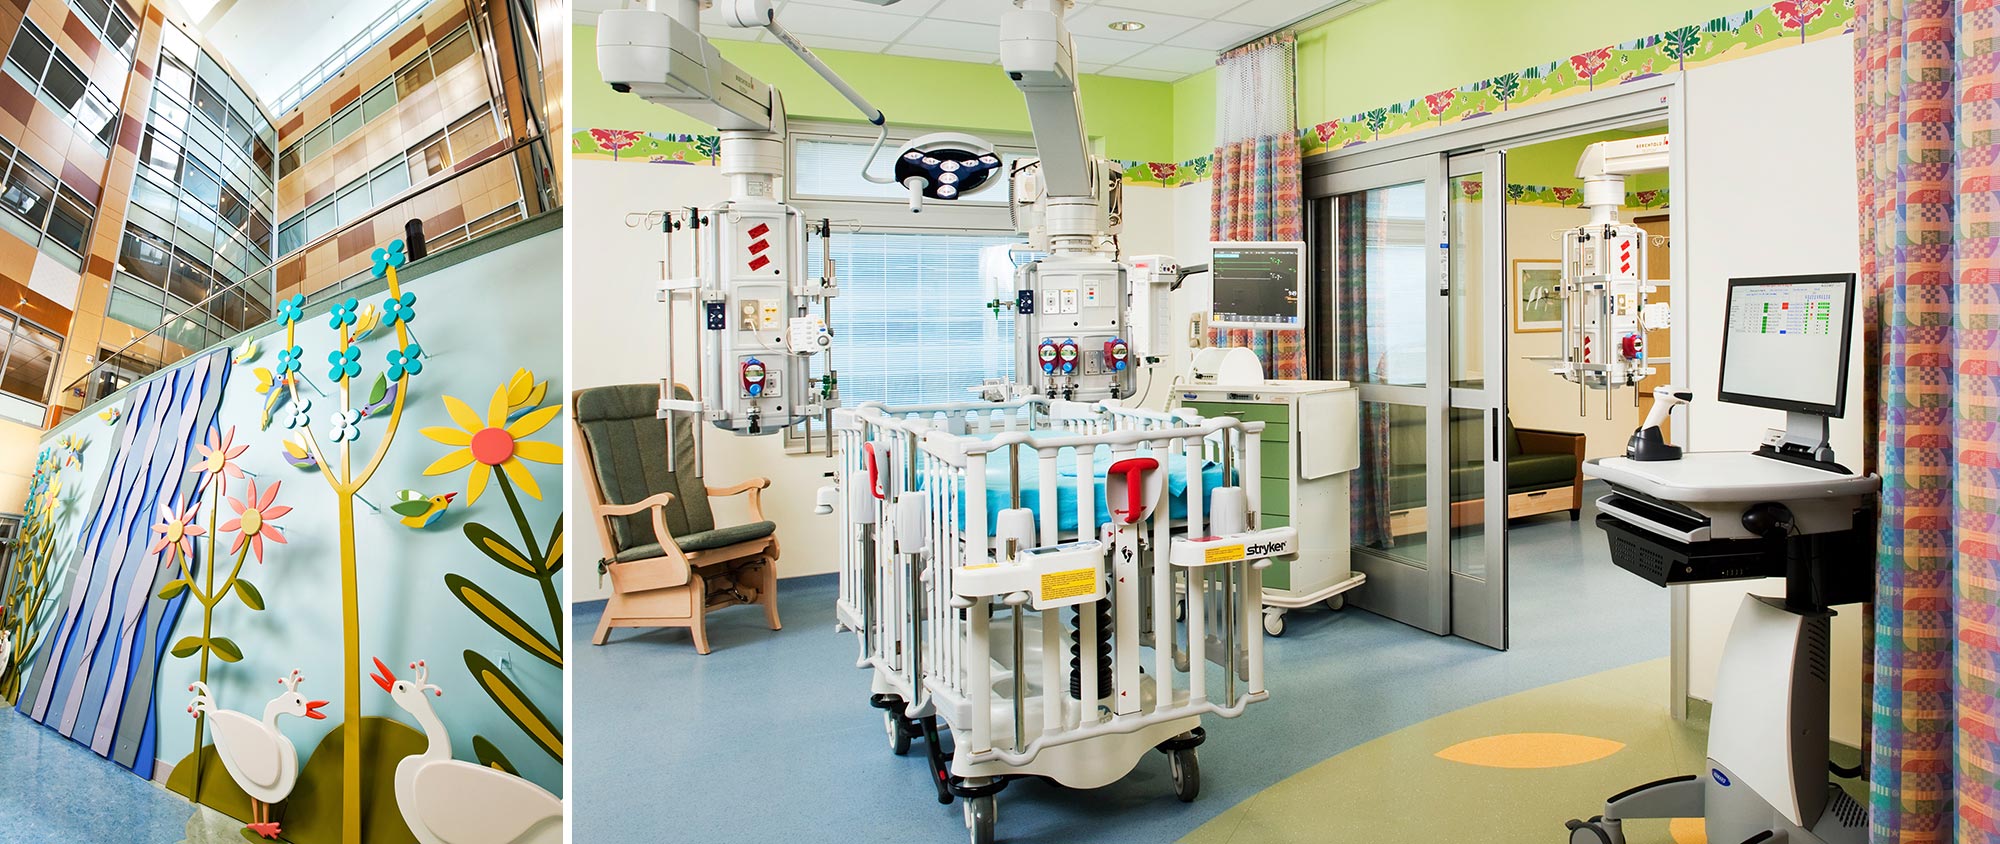 Monroe Carell Jr. Children’s Hospital at Vanderbilt 33 Bed Expansion